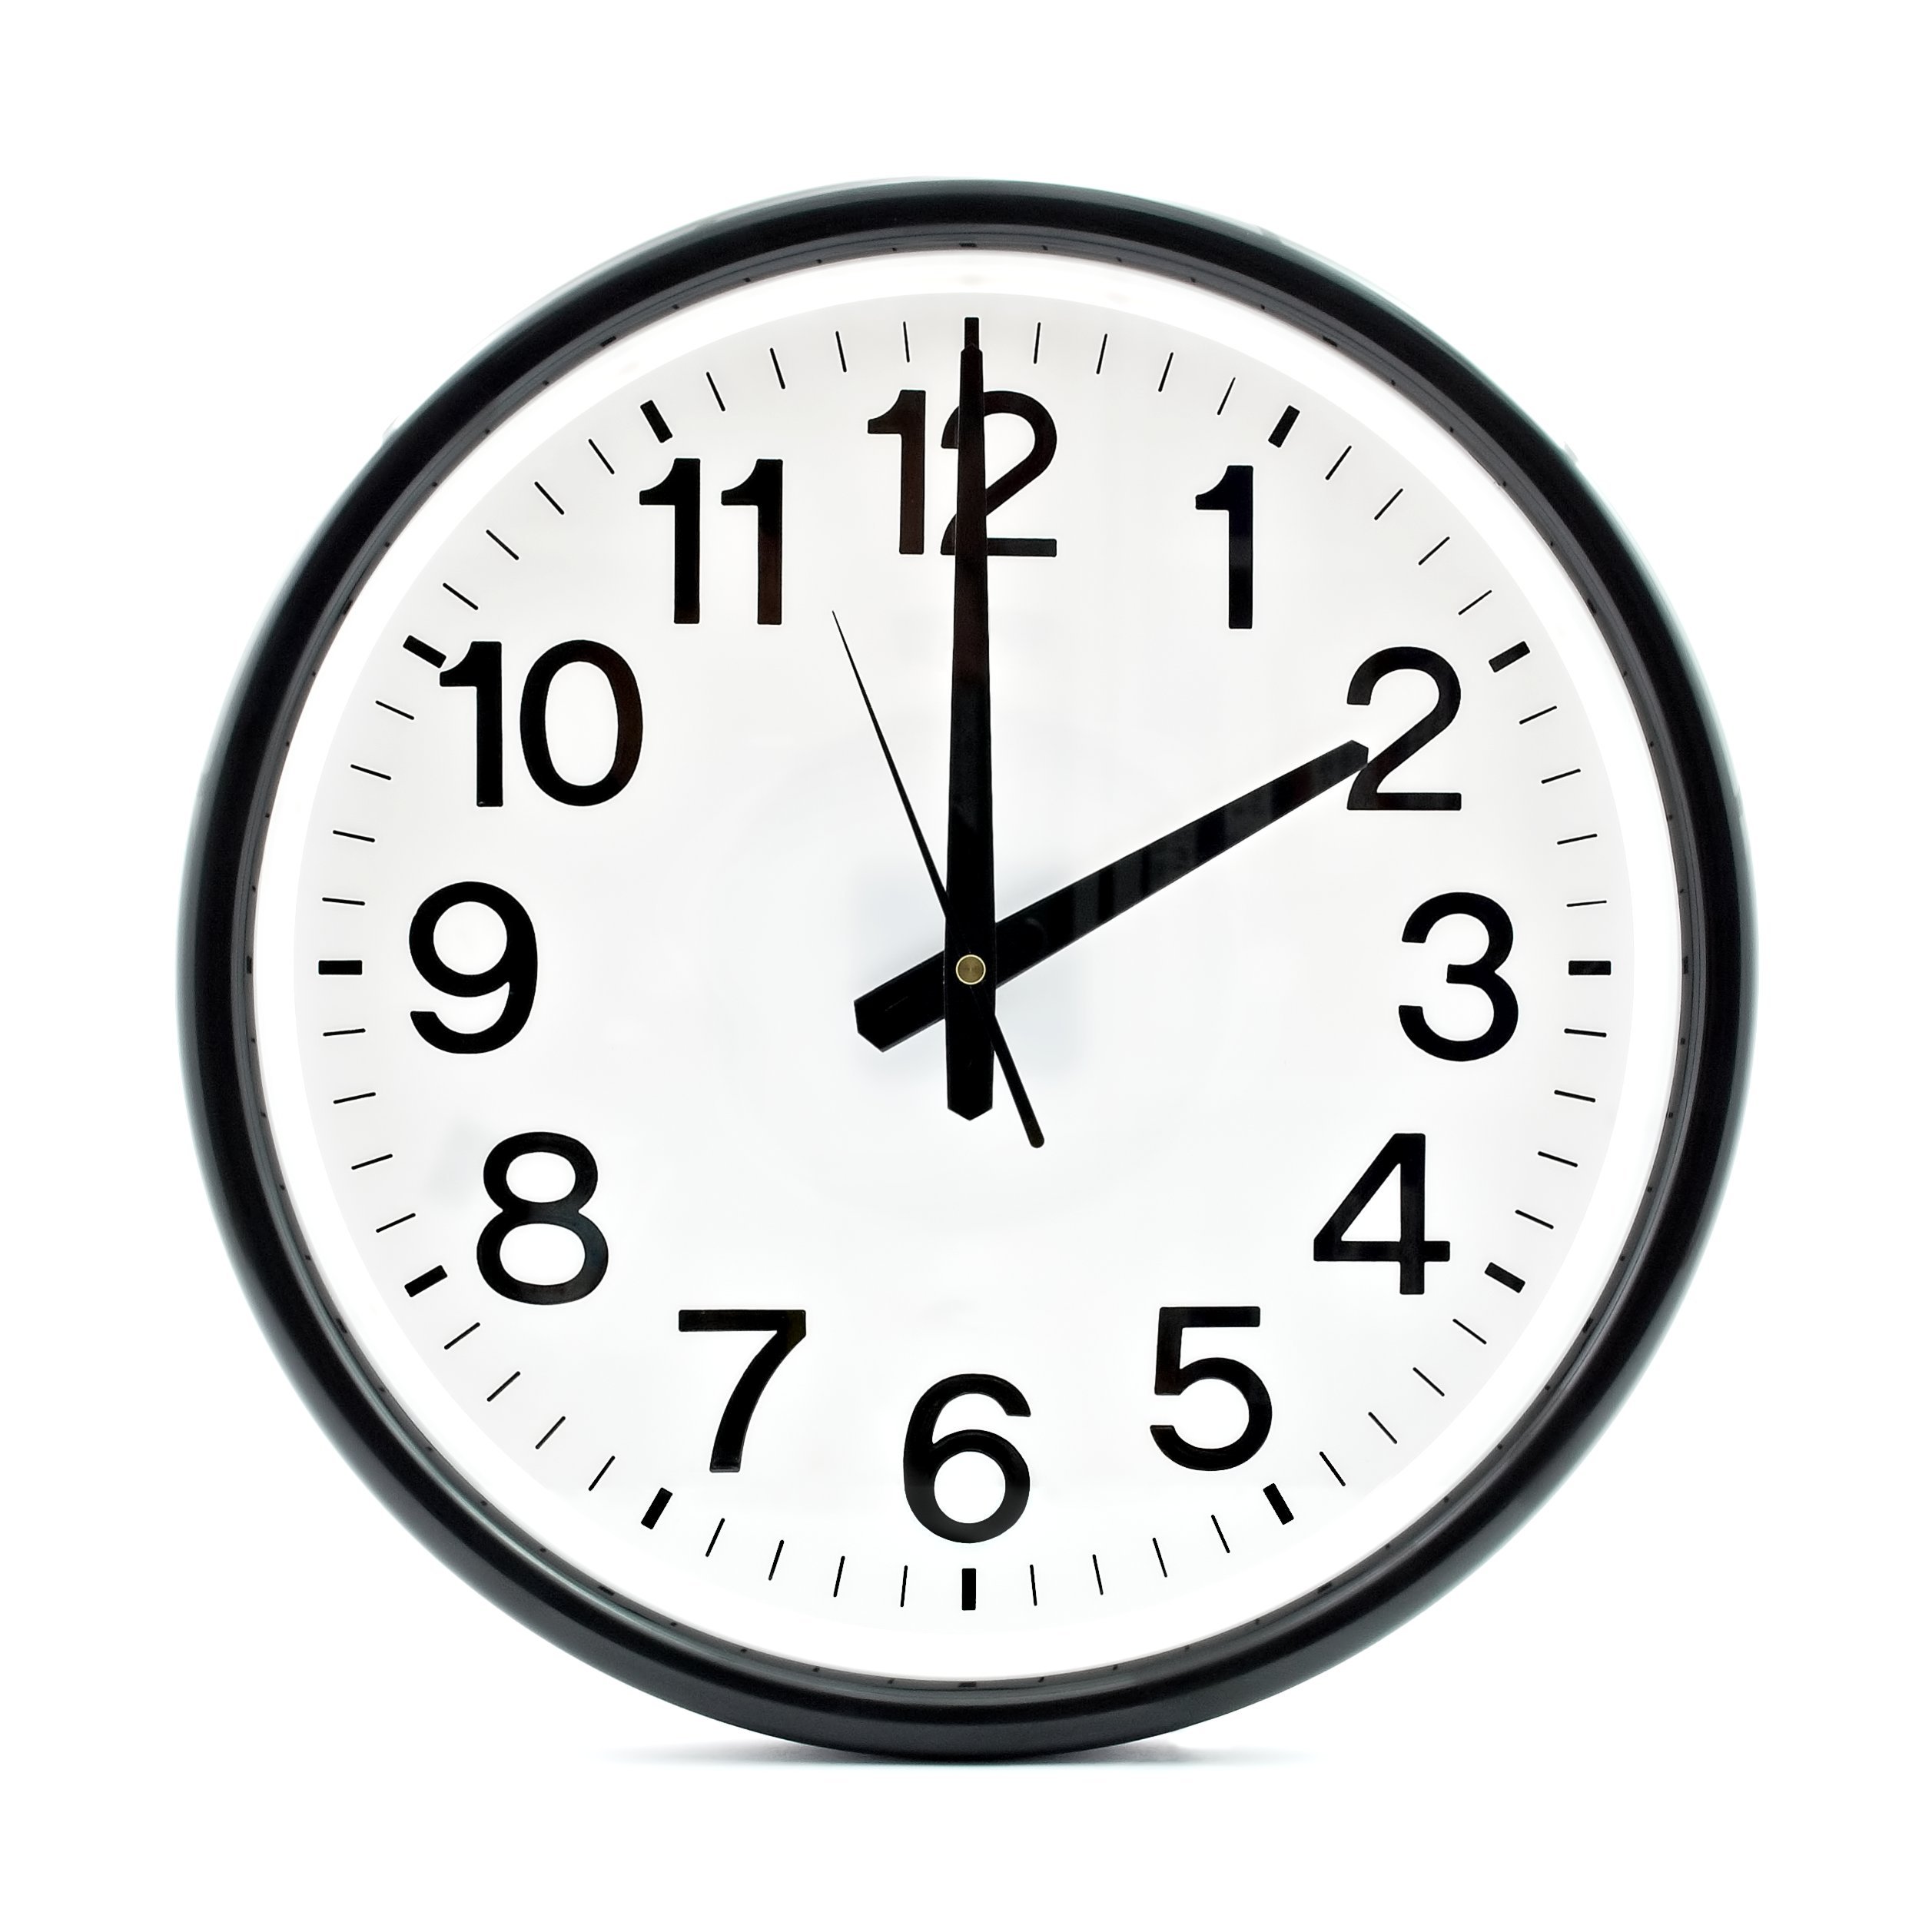 14 часов 26 минут. Часы 2 часа. Часы показывают 14:00. Часы два часа дня. Часы показывают 2 часа.